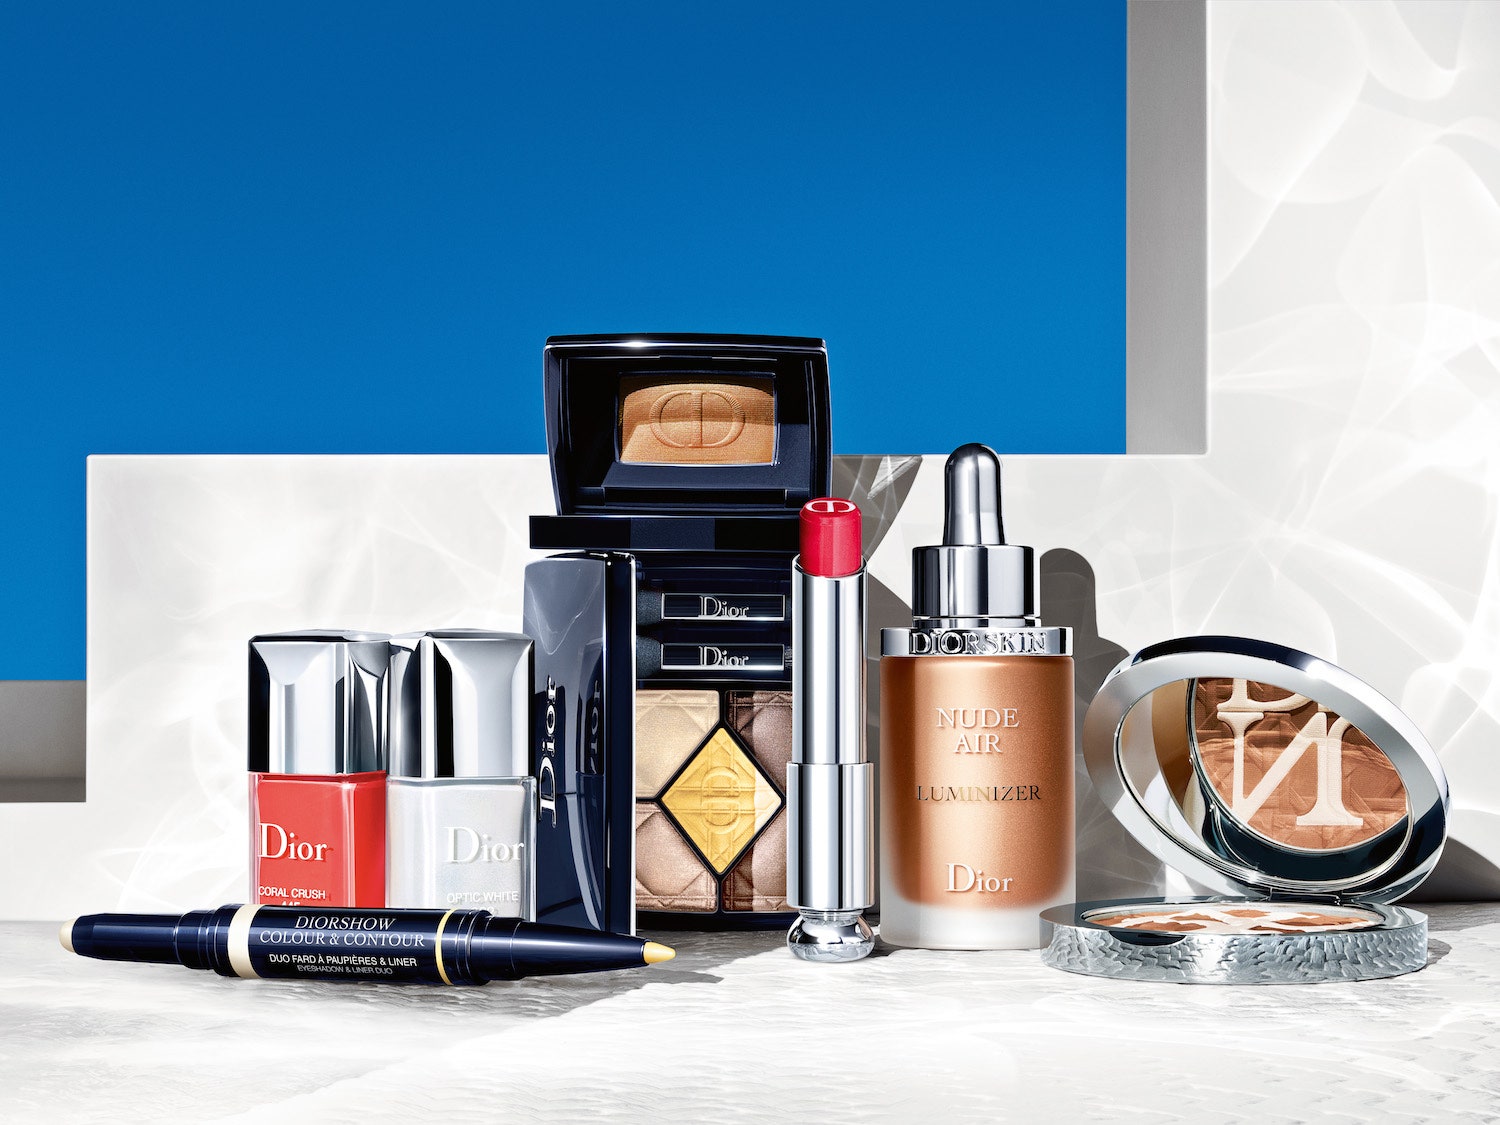 Dior Care  Dare летняя коллекция макияжа с бронзовыми оттенками и увлажняющим уходом | Glamour